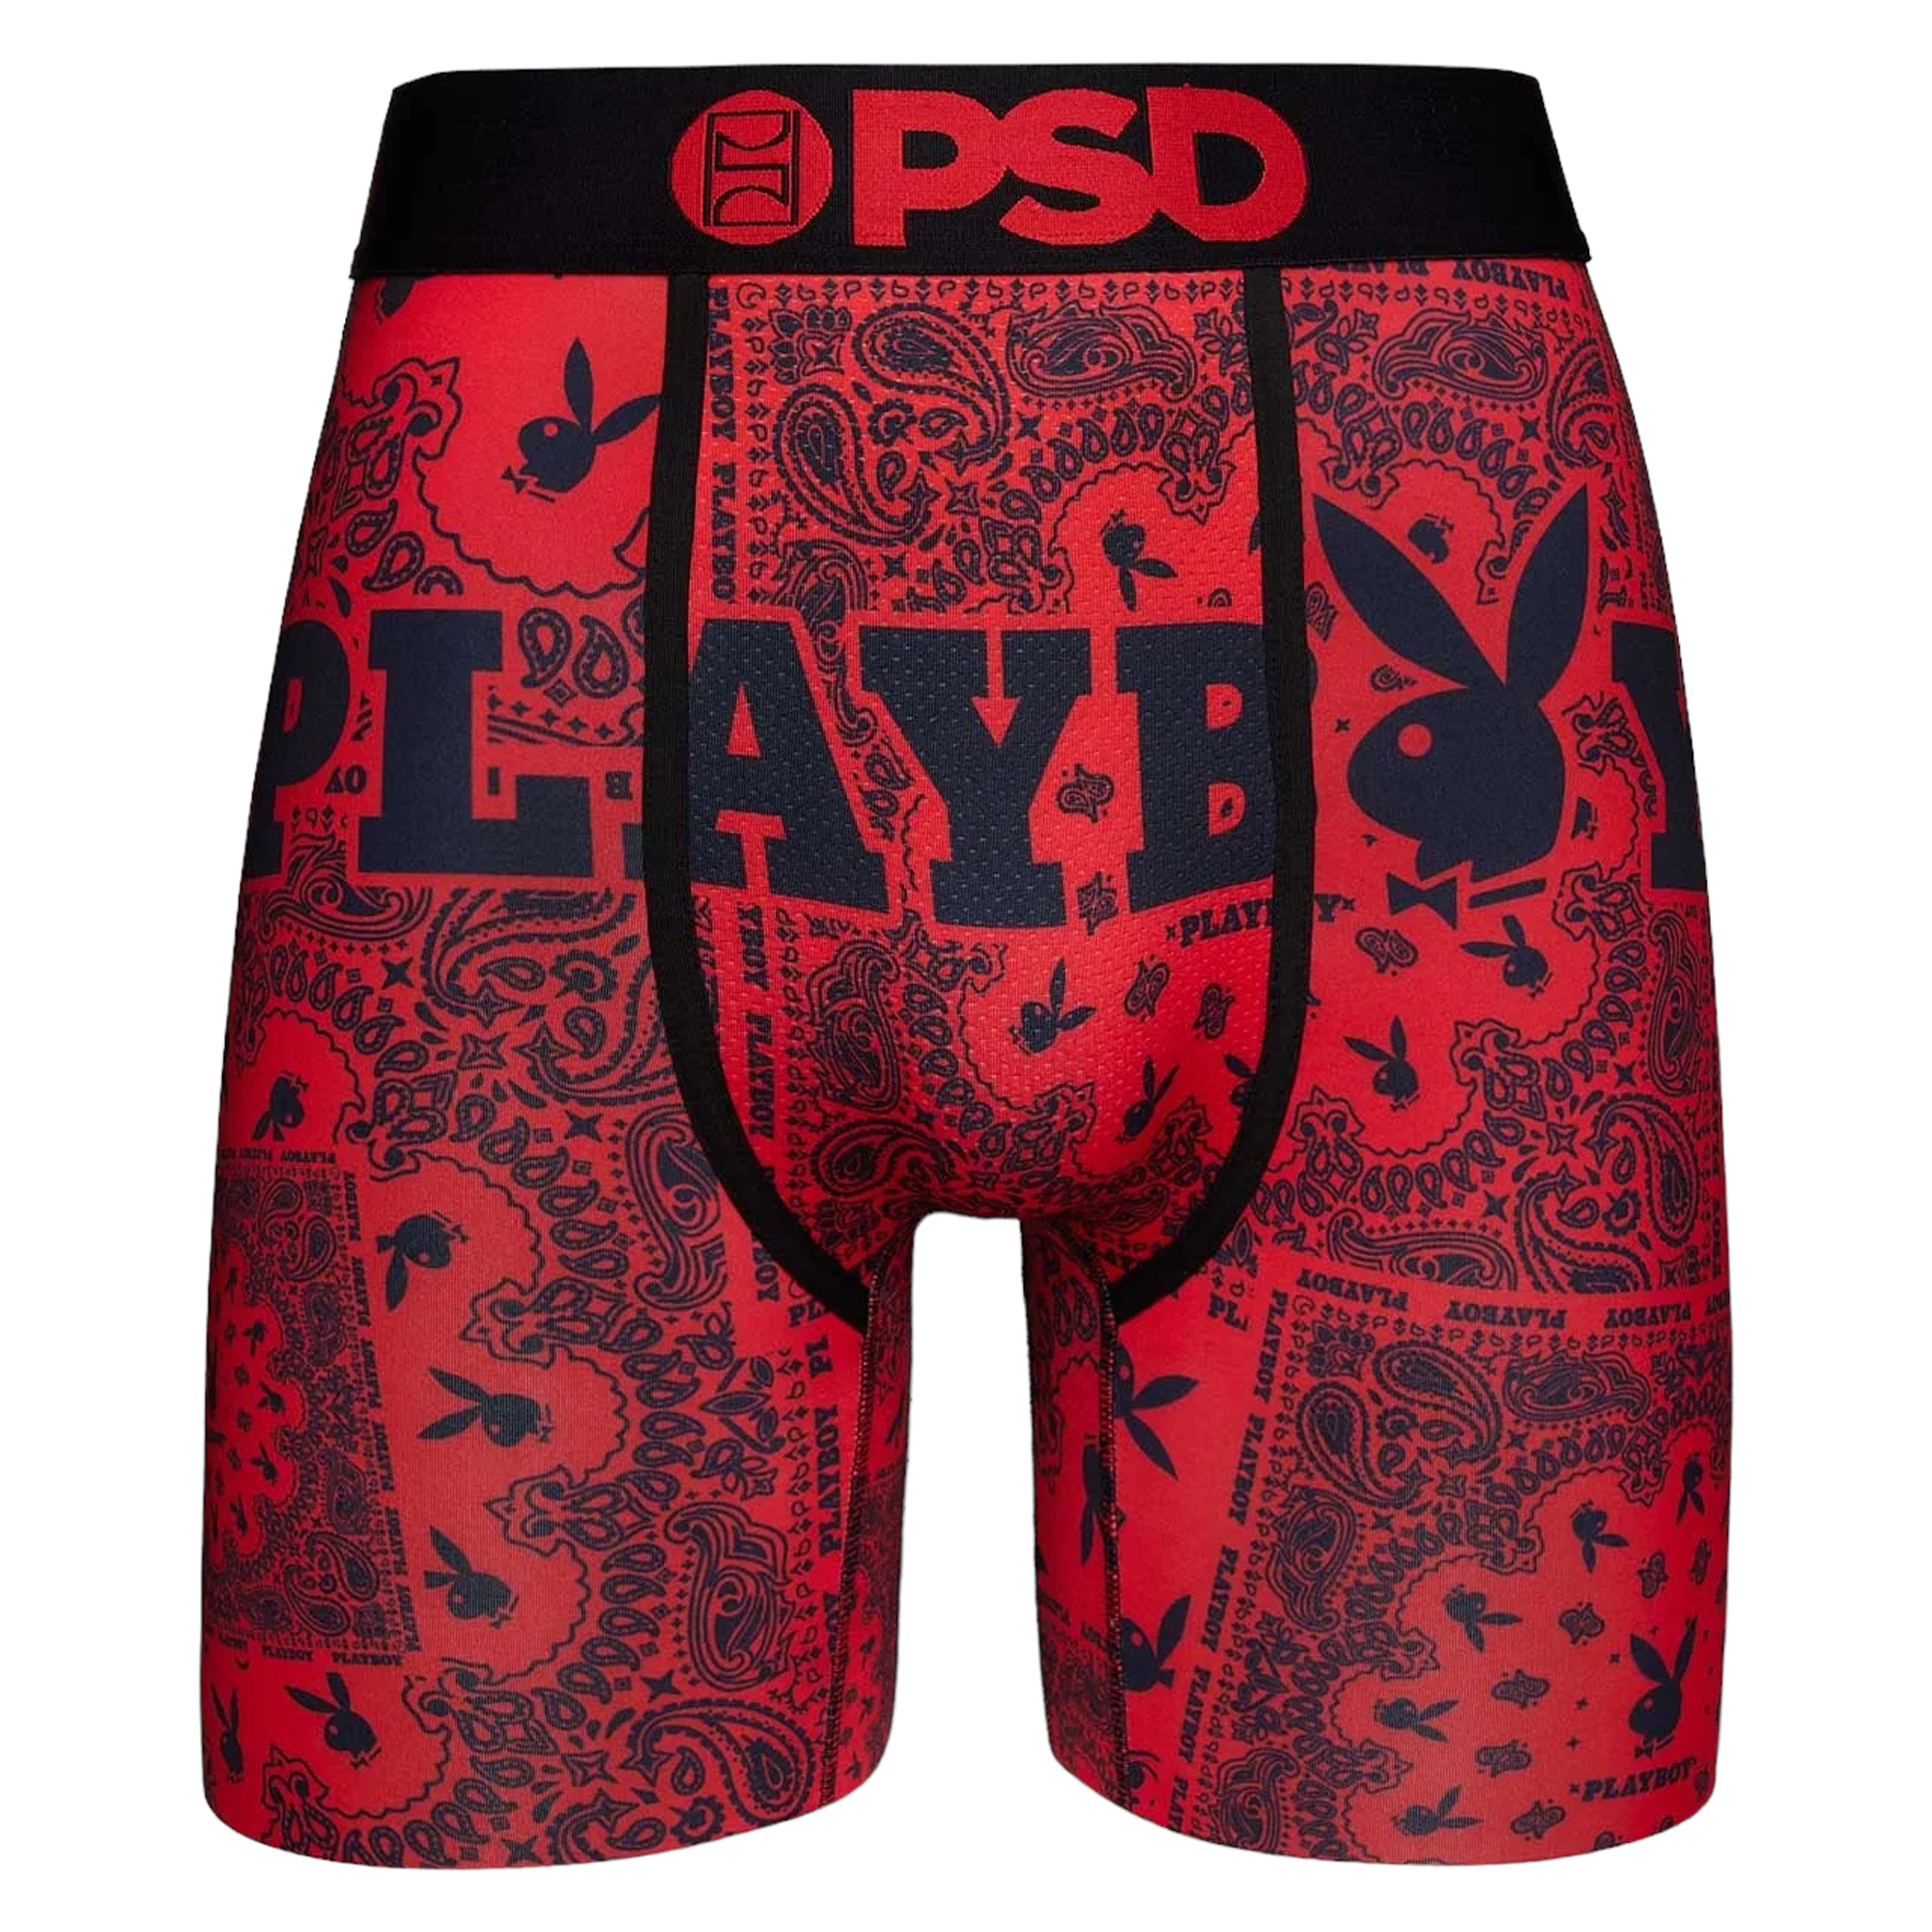 PSD UNDERWEAR Playboy Red Paisley 123180002 - Karmaloop